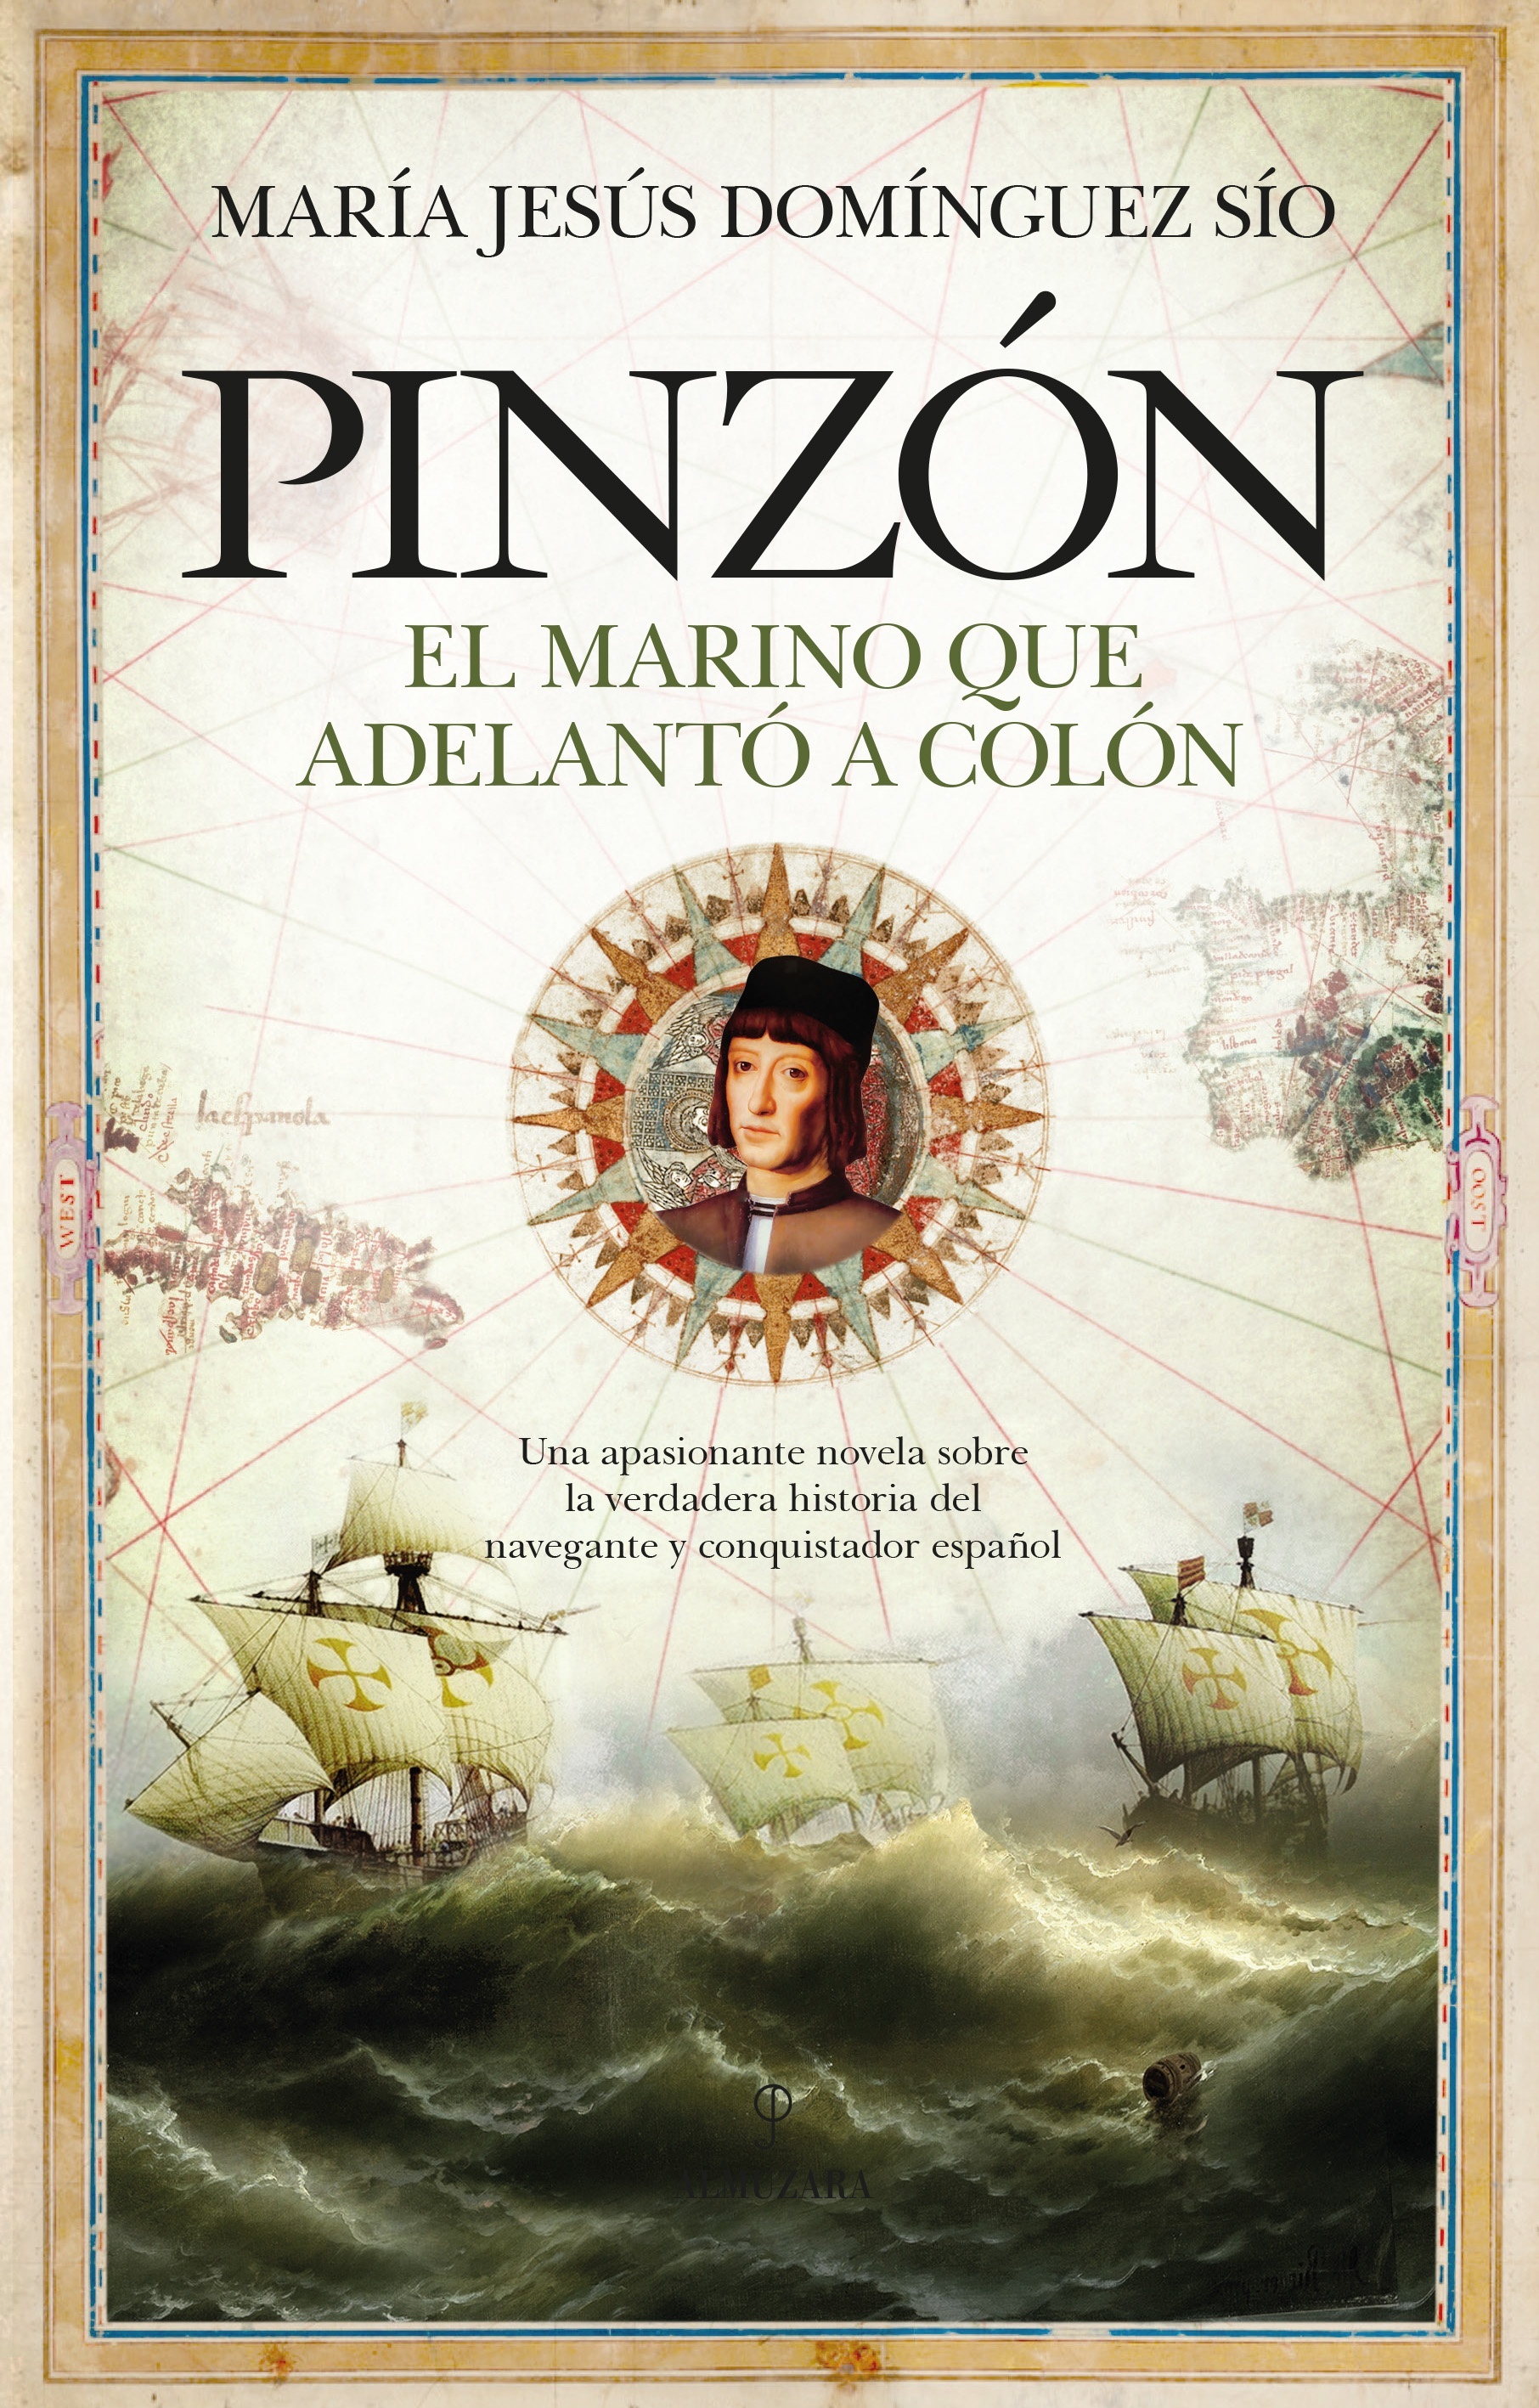 Pinzón "el marino que adelantó a Colón"